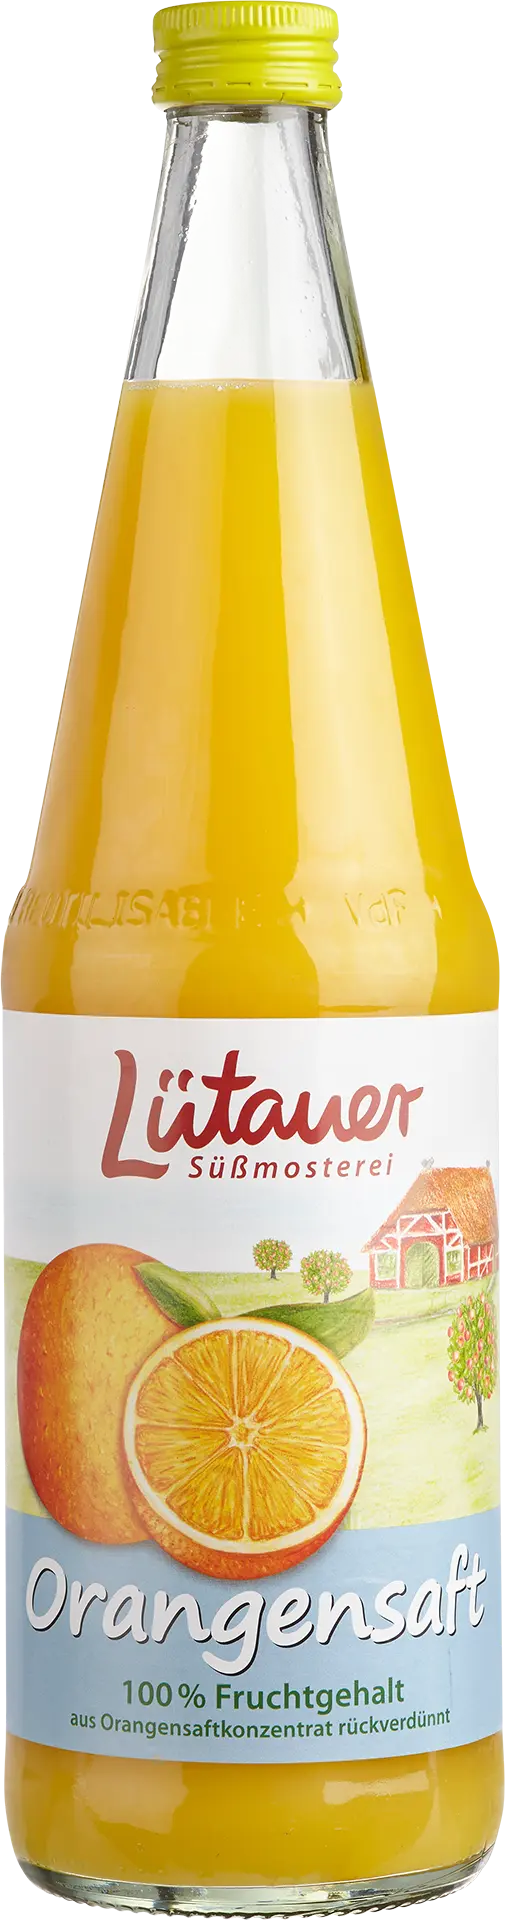 Lütauer Orangensaft (Konzentrat)